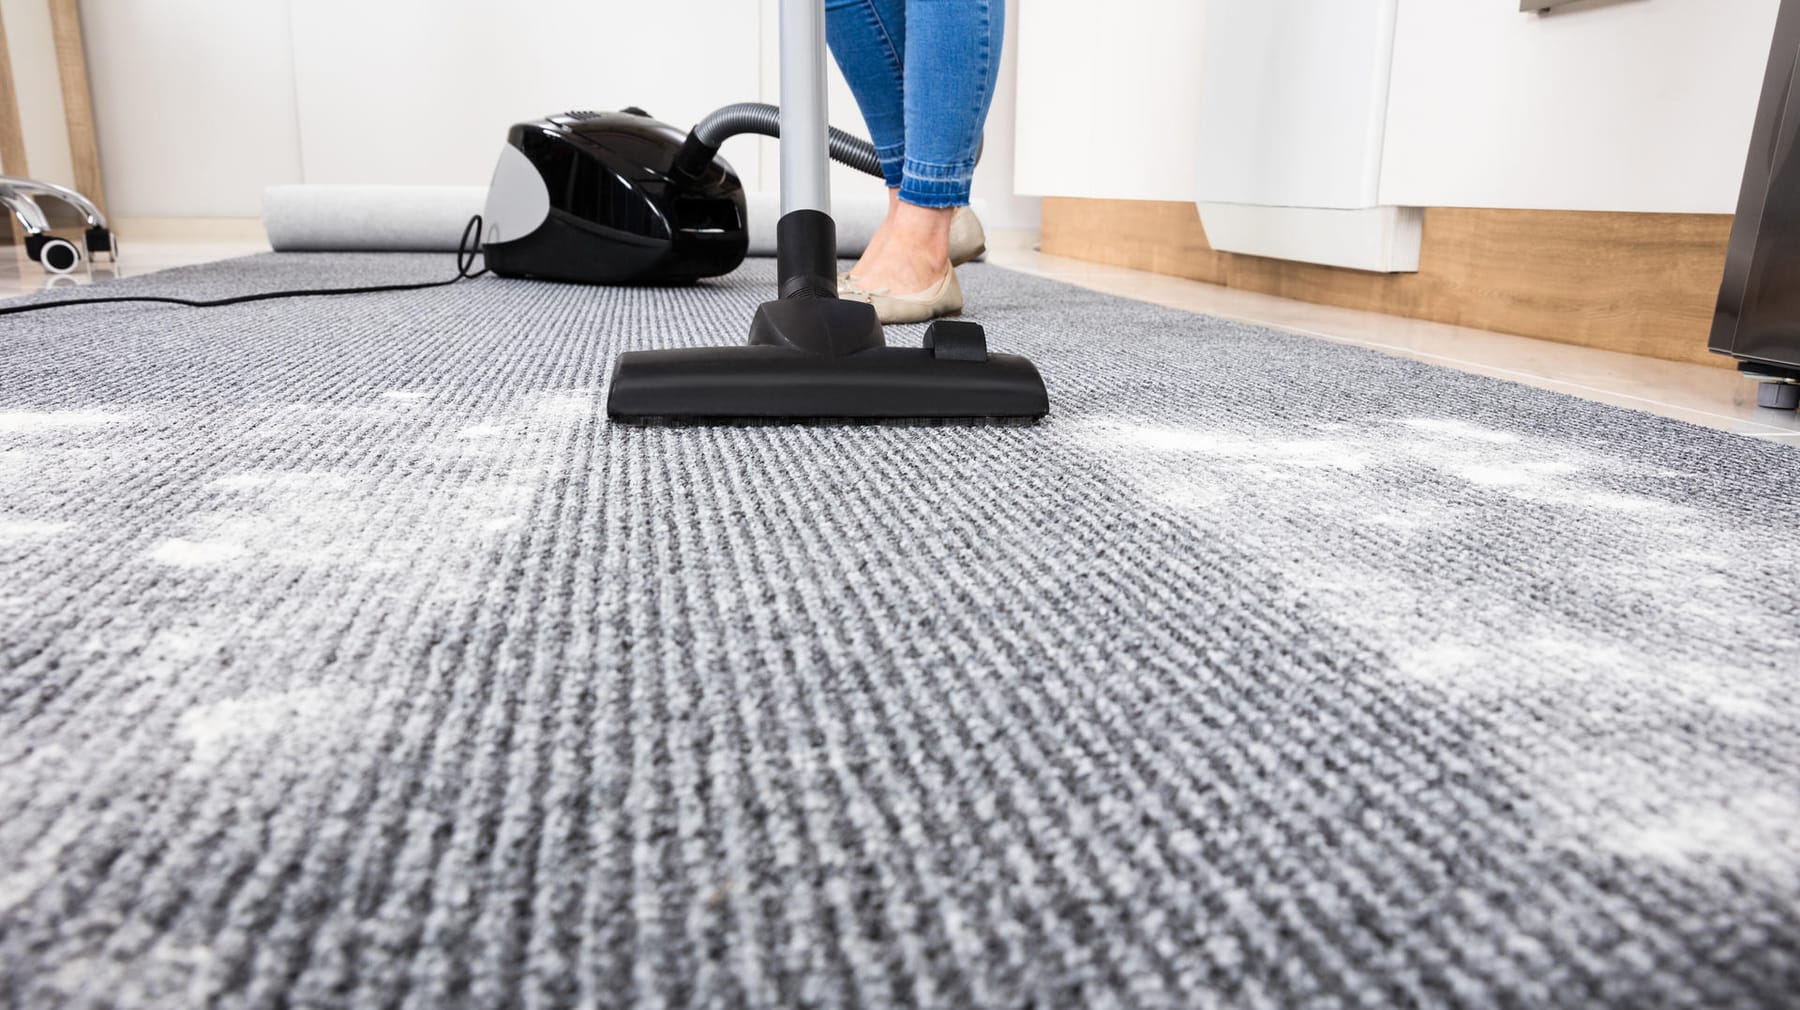 Teppich reinigen: Hausmittel und Tipps für die richtige Pflege